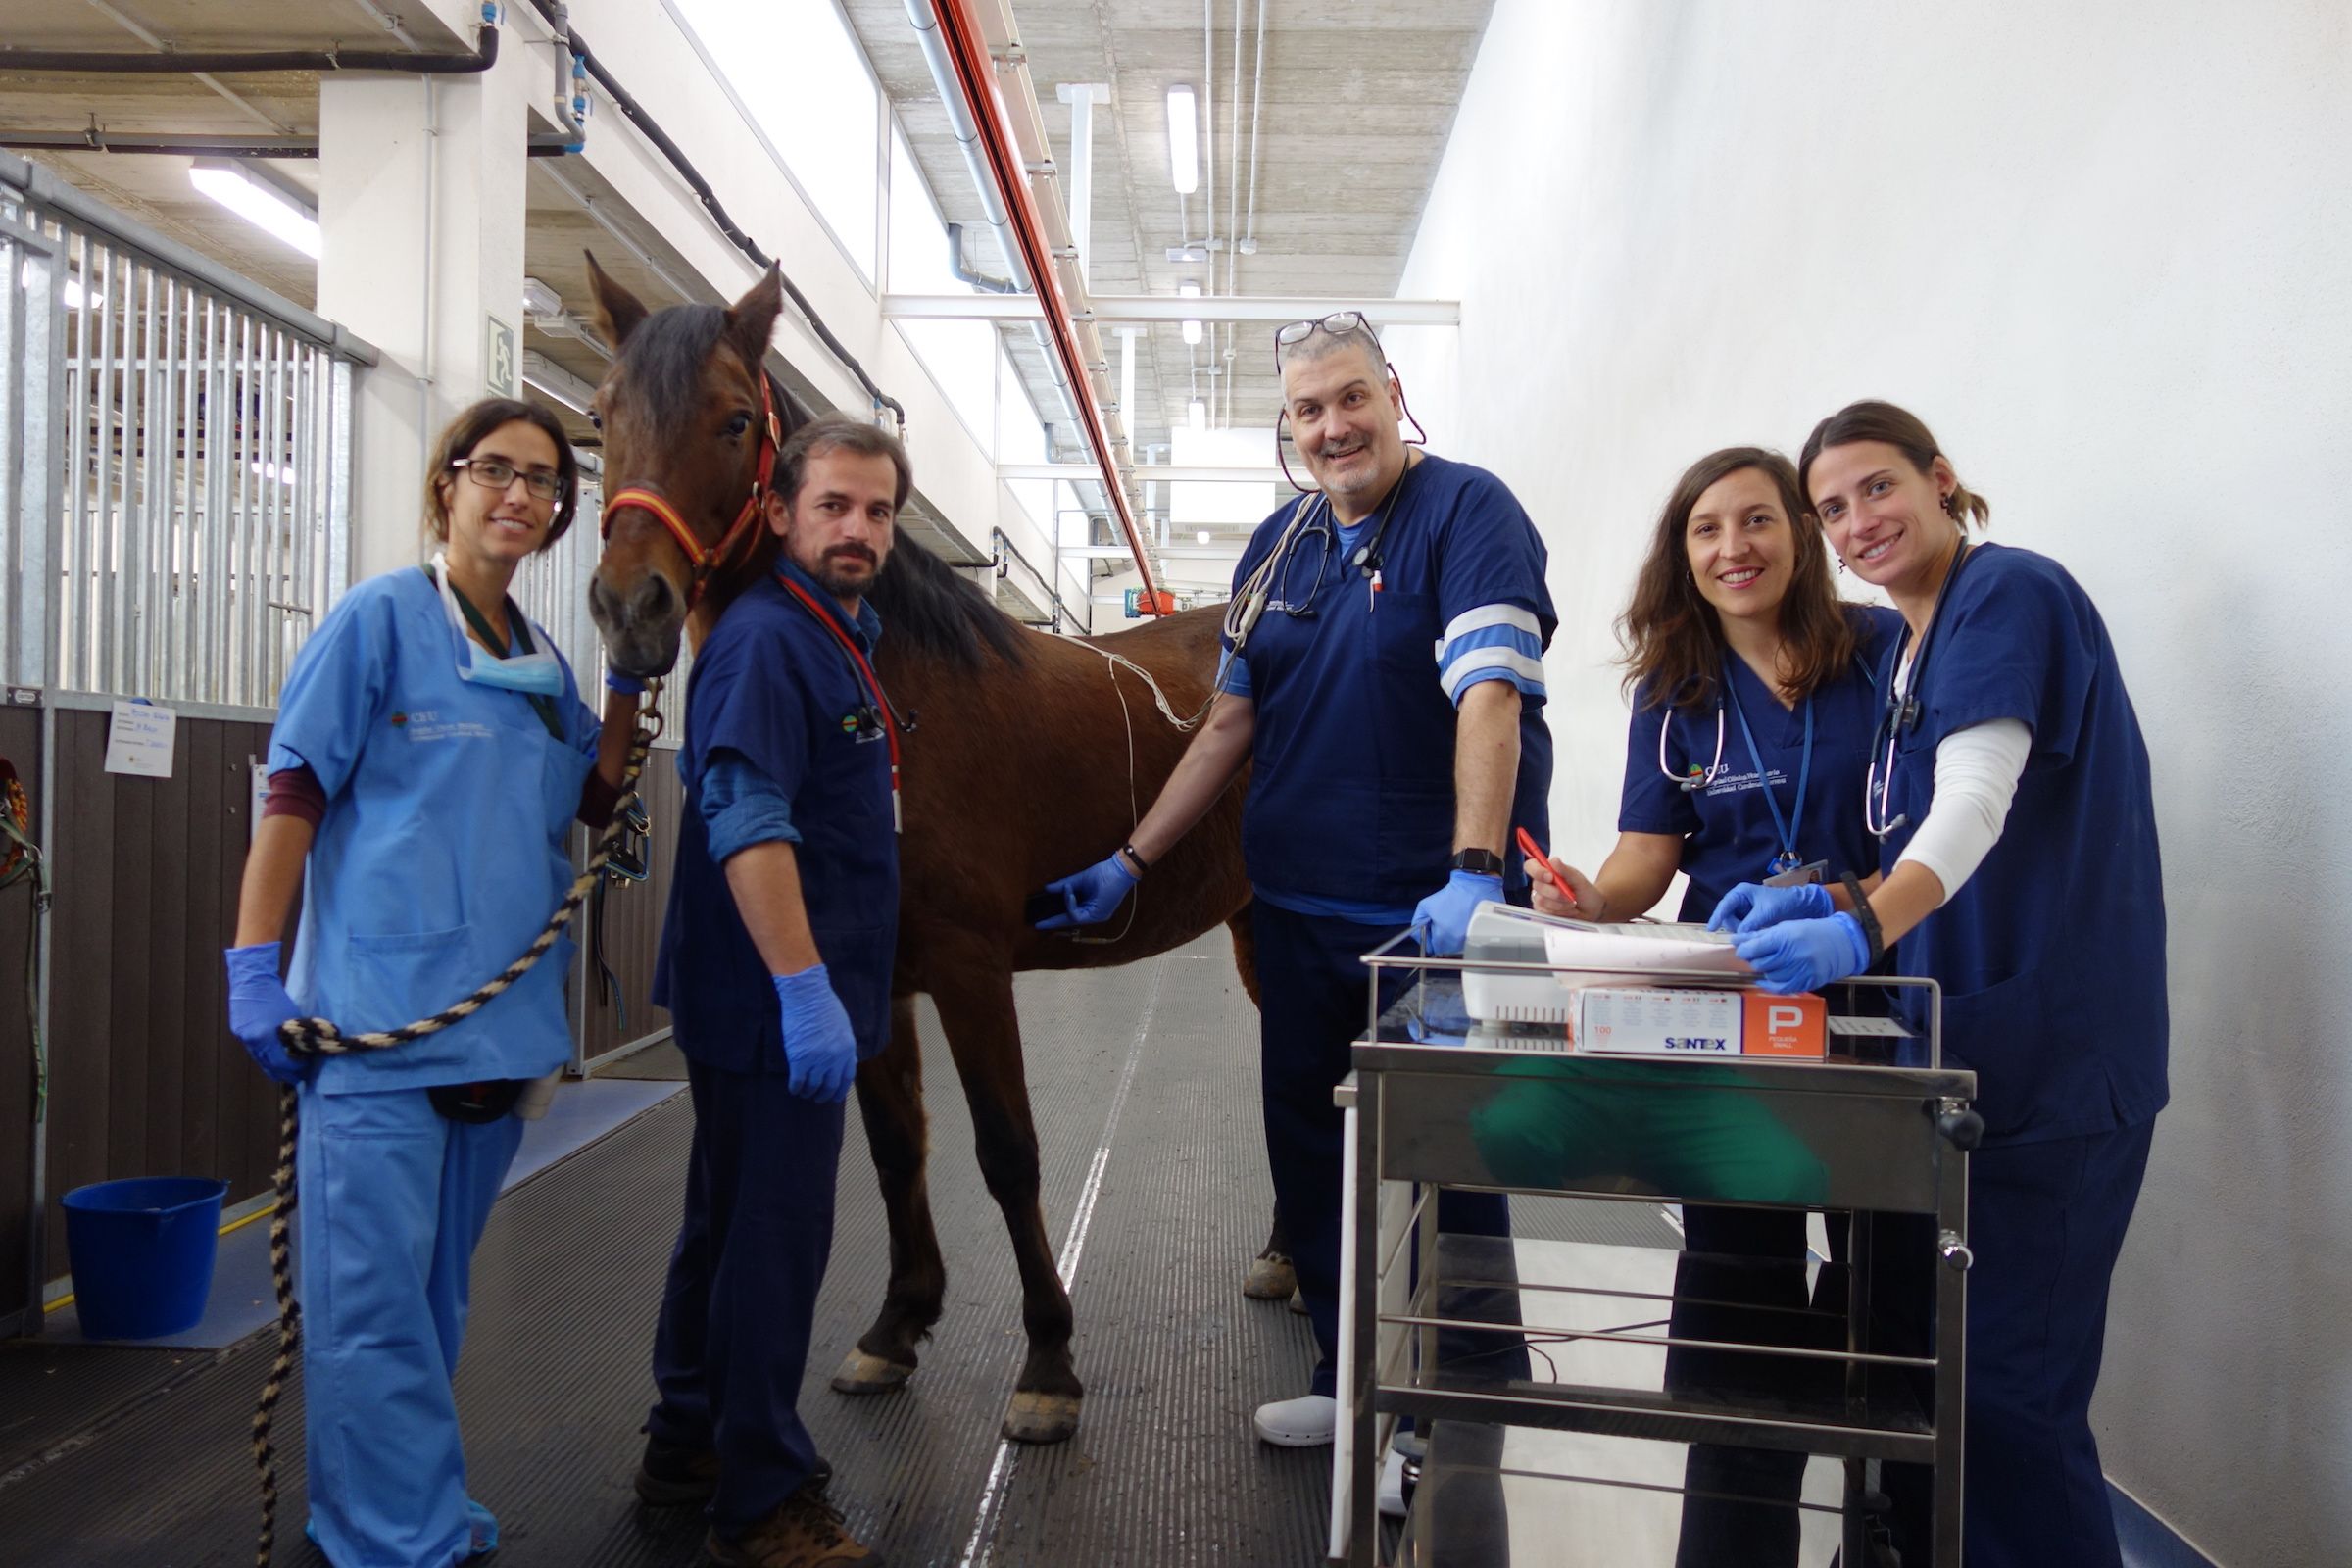 La ATV Elia Malo, y los profesores Ignacio Corradini, Javier Engel, Alicia Fernández y Marta Barba, con la yegua Málaga, durante el proceso de validación de la app para electrocardiogramas, en el HCV de la CEU UCH.